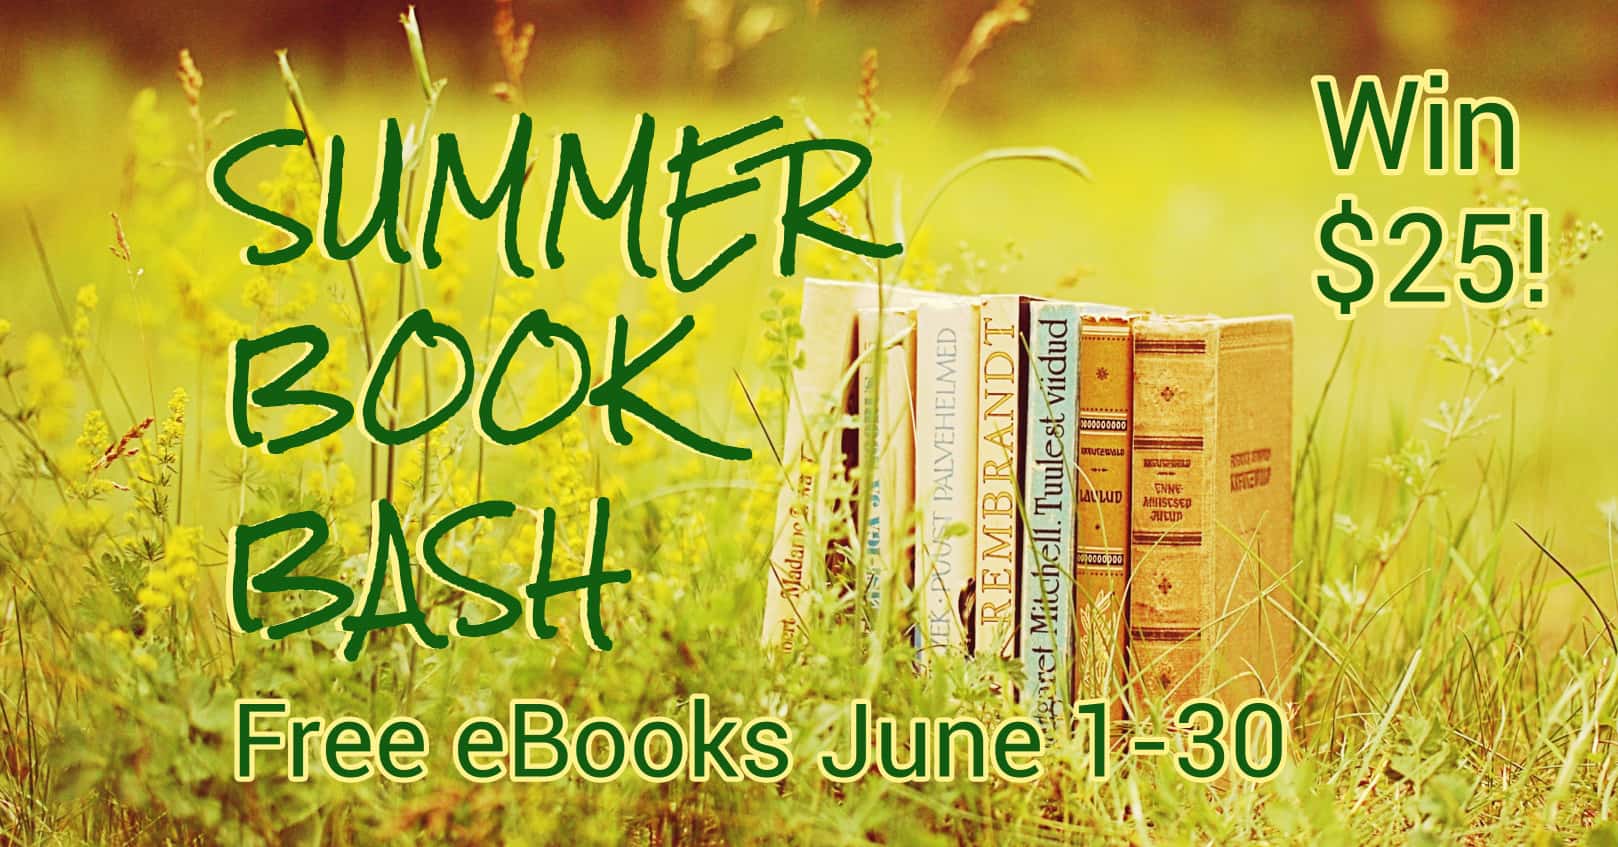 Summer Book Bash